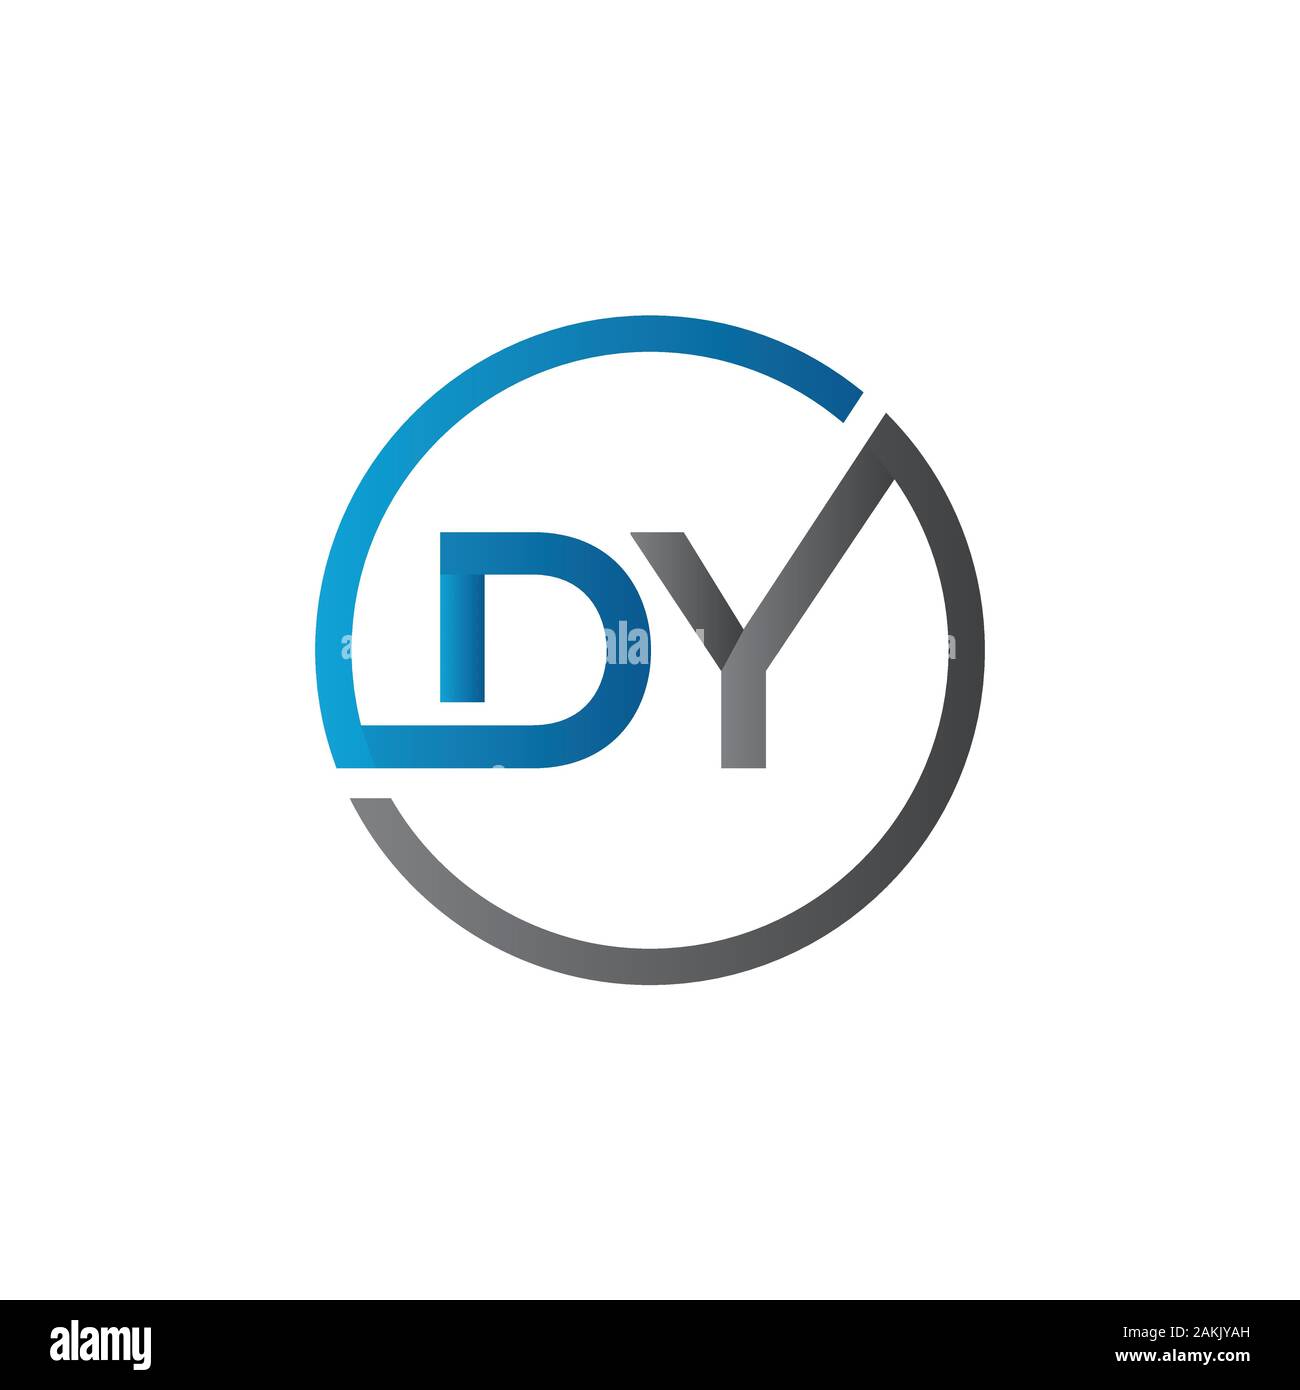 Erste DY Schreiben Logo mit Kreativen Moderne Typografie Vektor Vorlage. Kreative abstrakte Buchstaben DY Logo Vektor. Stock Vektor